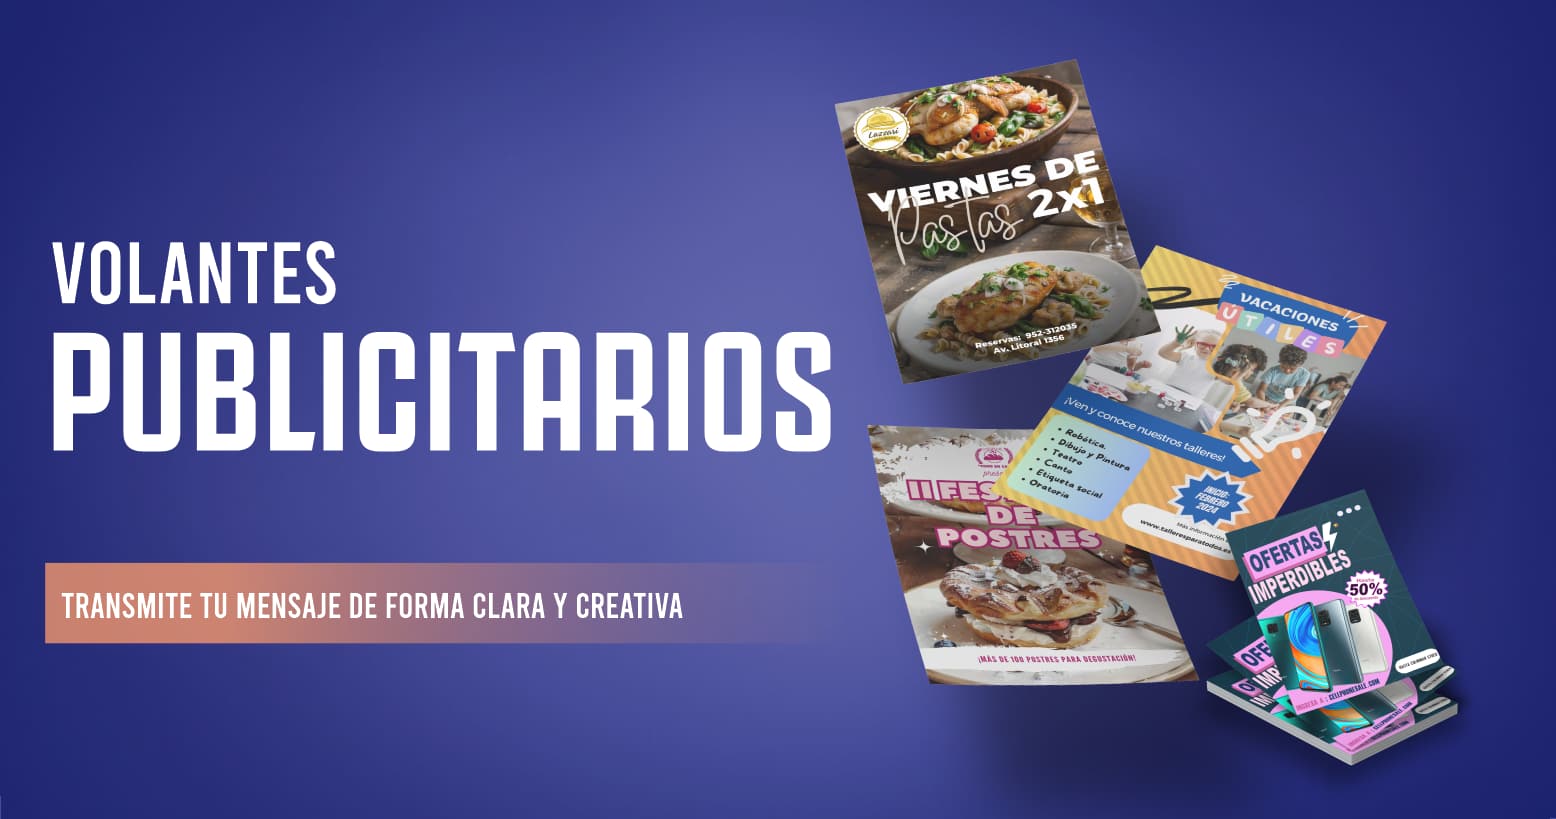 impresion de flyers y volantes publicitarios diseño grafico gratis venta todo Peru precios por mayor -tacna centro